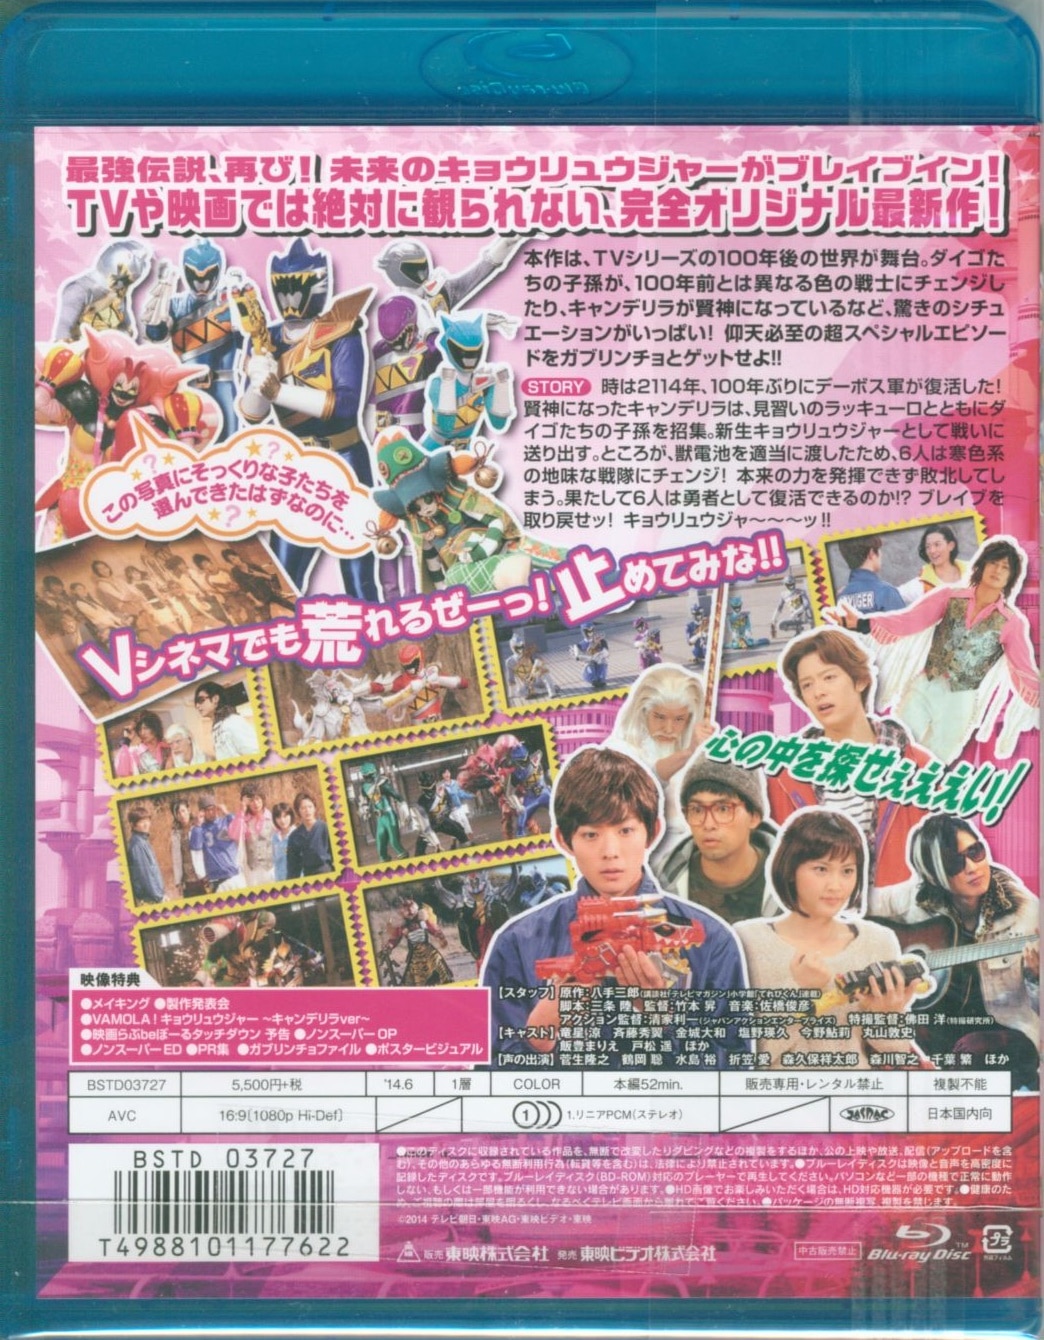 キョウリュウジャー 33.5話 Blu-ray ブルーレイ Vシネマ DVD - 日本映画